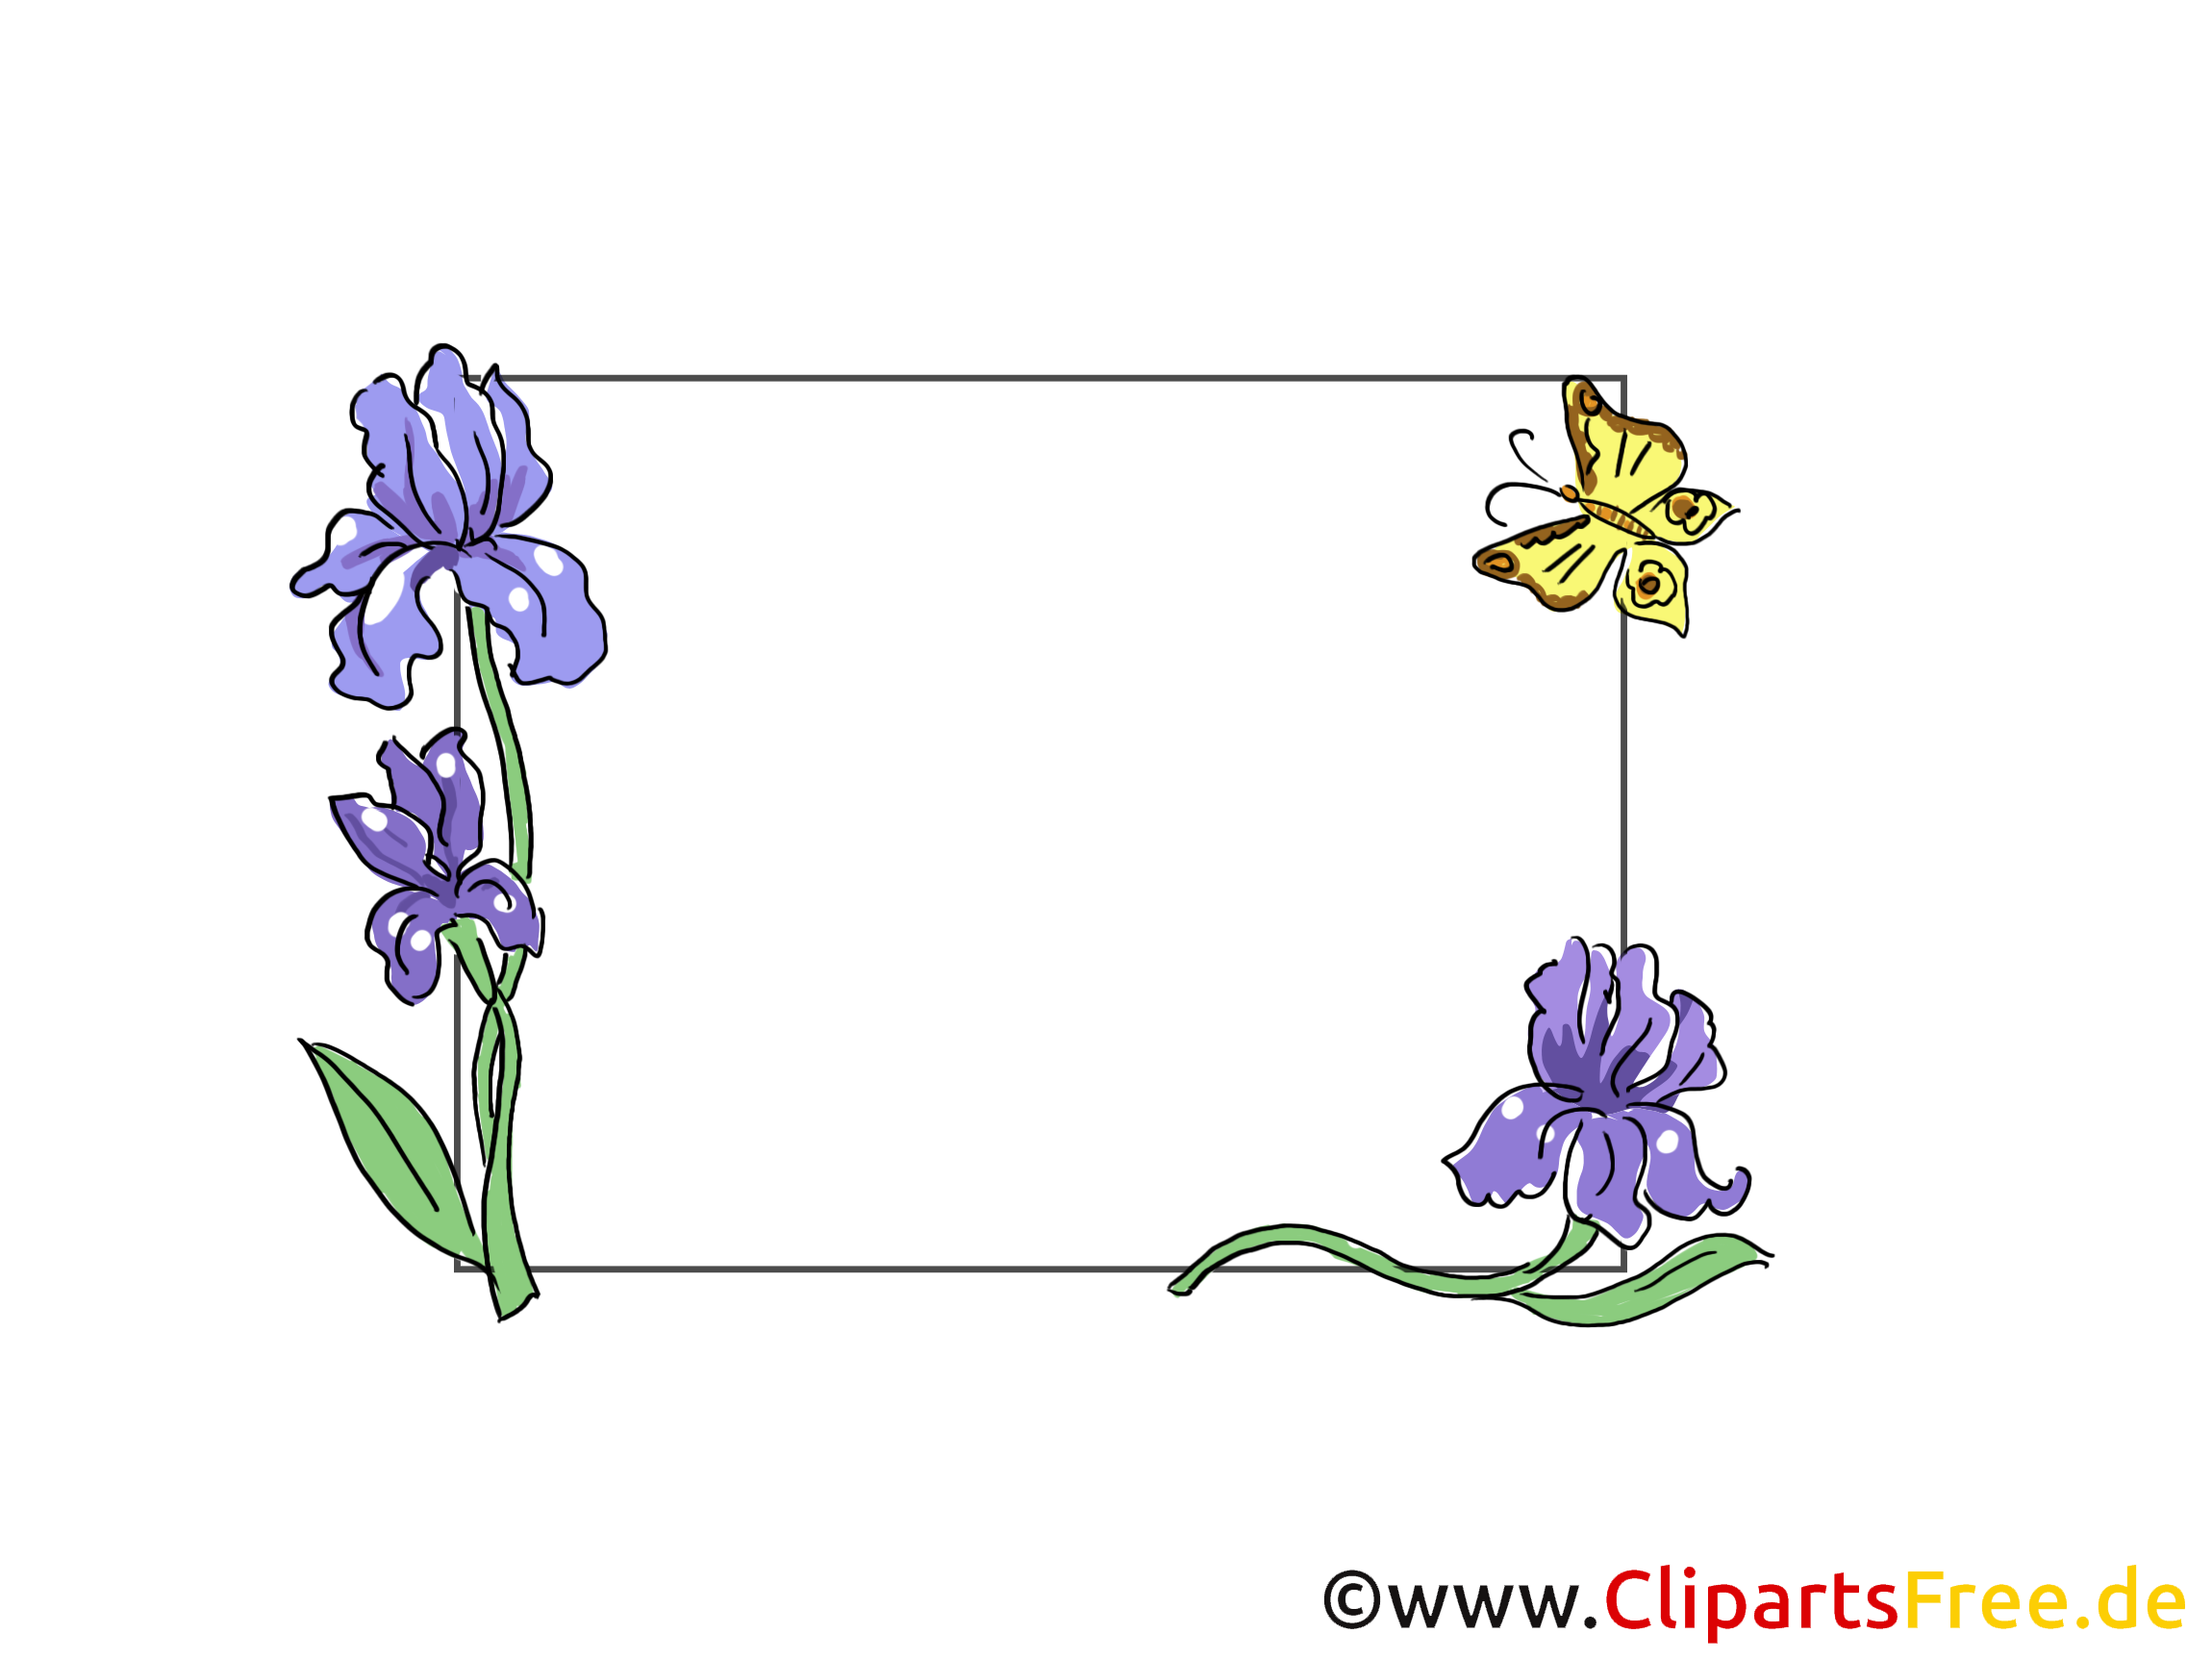 Papillon image – Cadre images cliparts